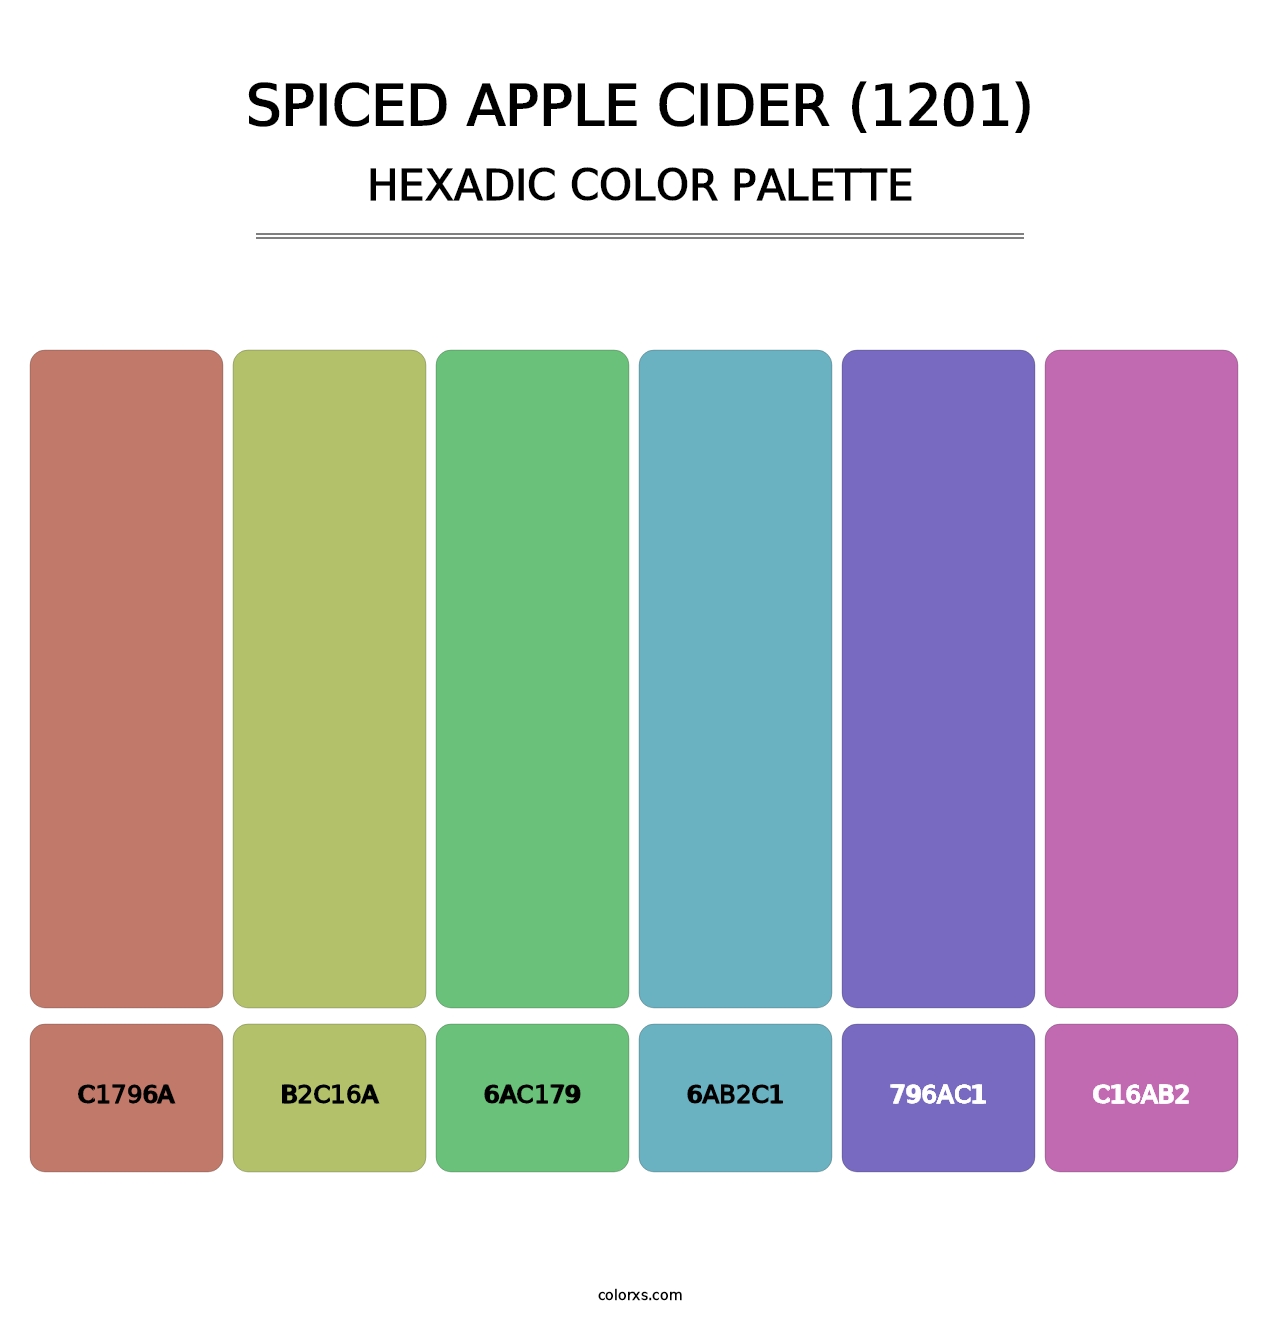 Spiced Apple Cider (1201) - Hexadic Color Palette